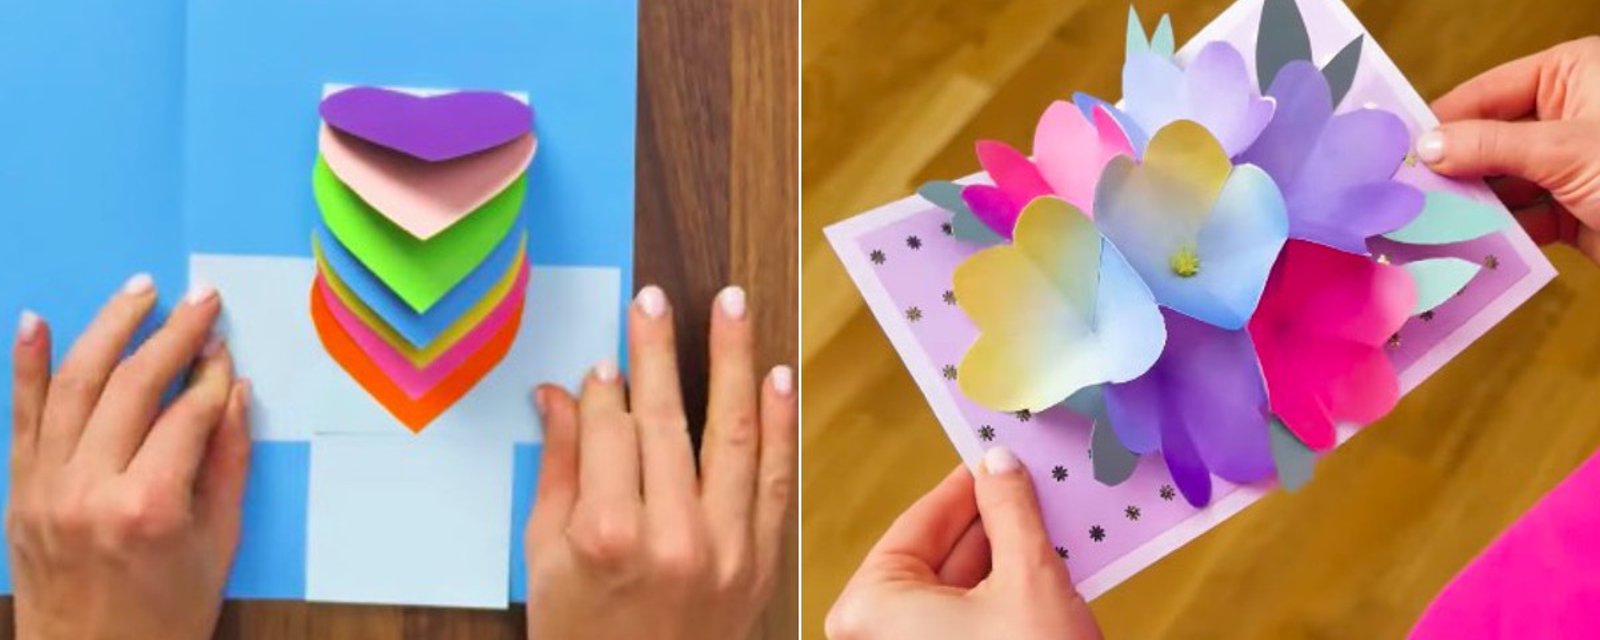 Avec du simple papier, elle nous apprend à faire 10 modèles différents de carte Pop-Up 